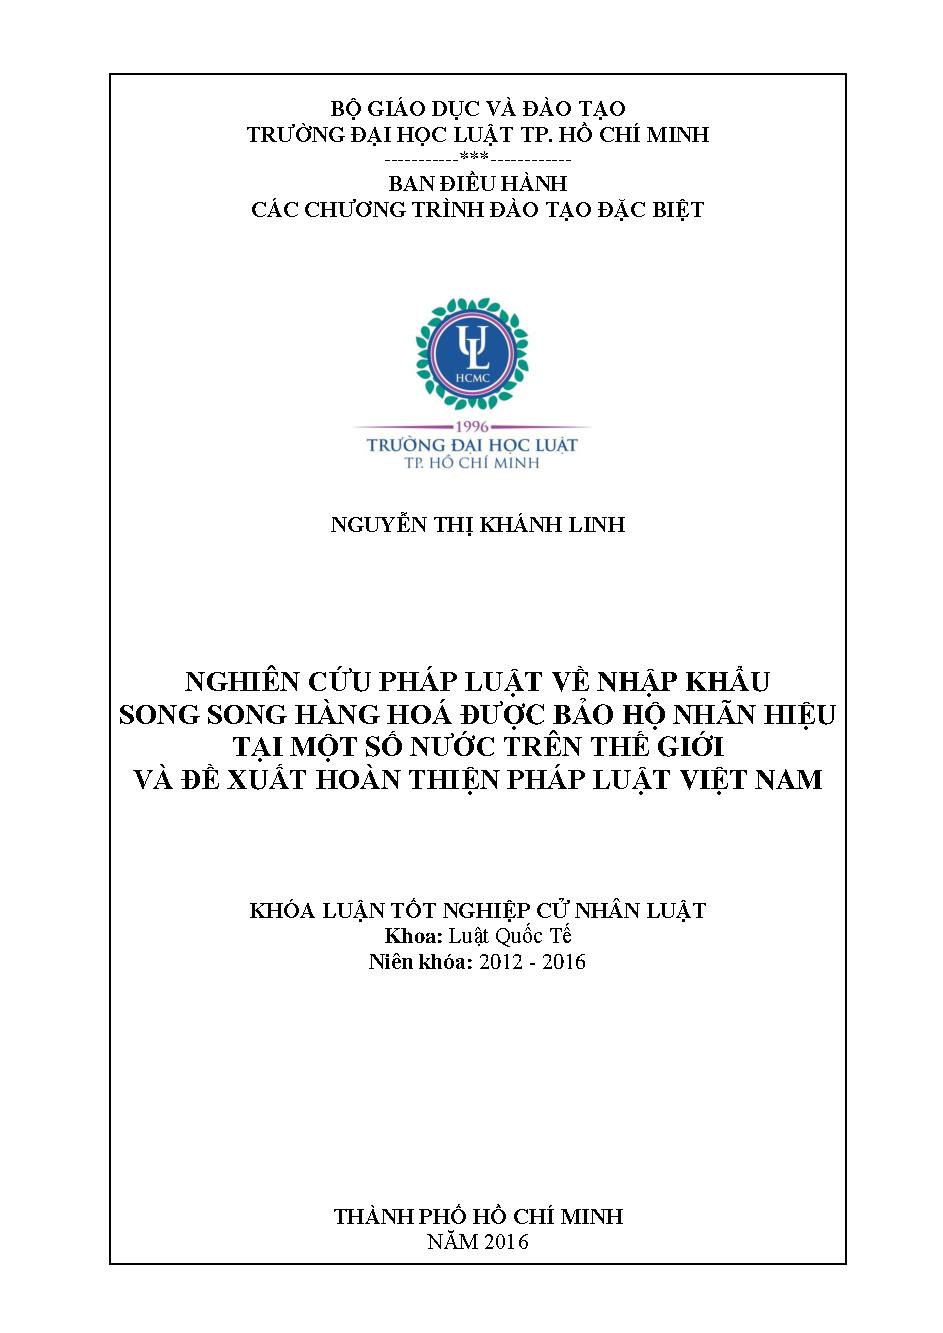 Nghiên cứu pháp luật về nhập khẩu song song hàng hóa được bảo hộ nhãn hiệu tại một số nước trên thế giới và đề xuất hoàn thiện pháp luật Việt Nam